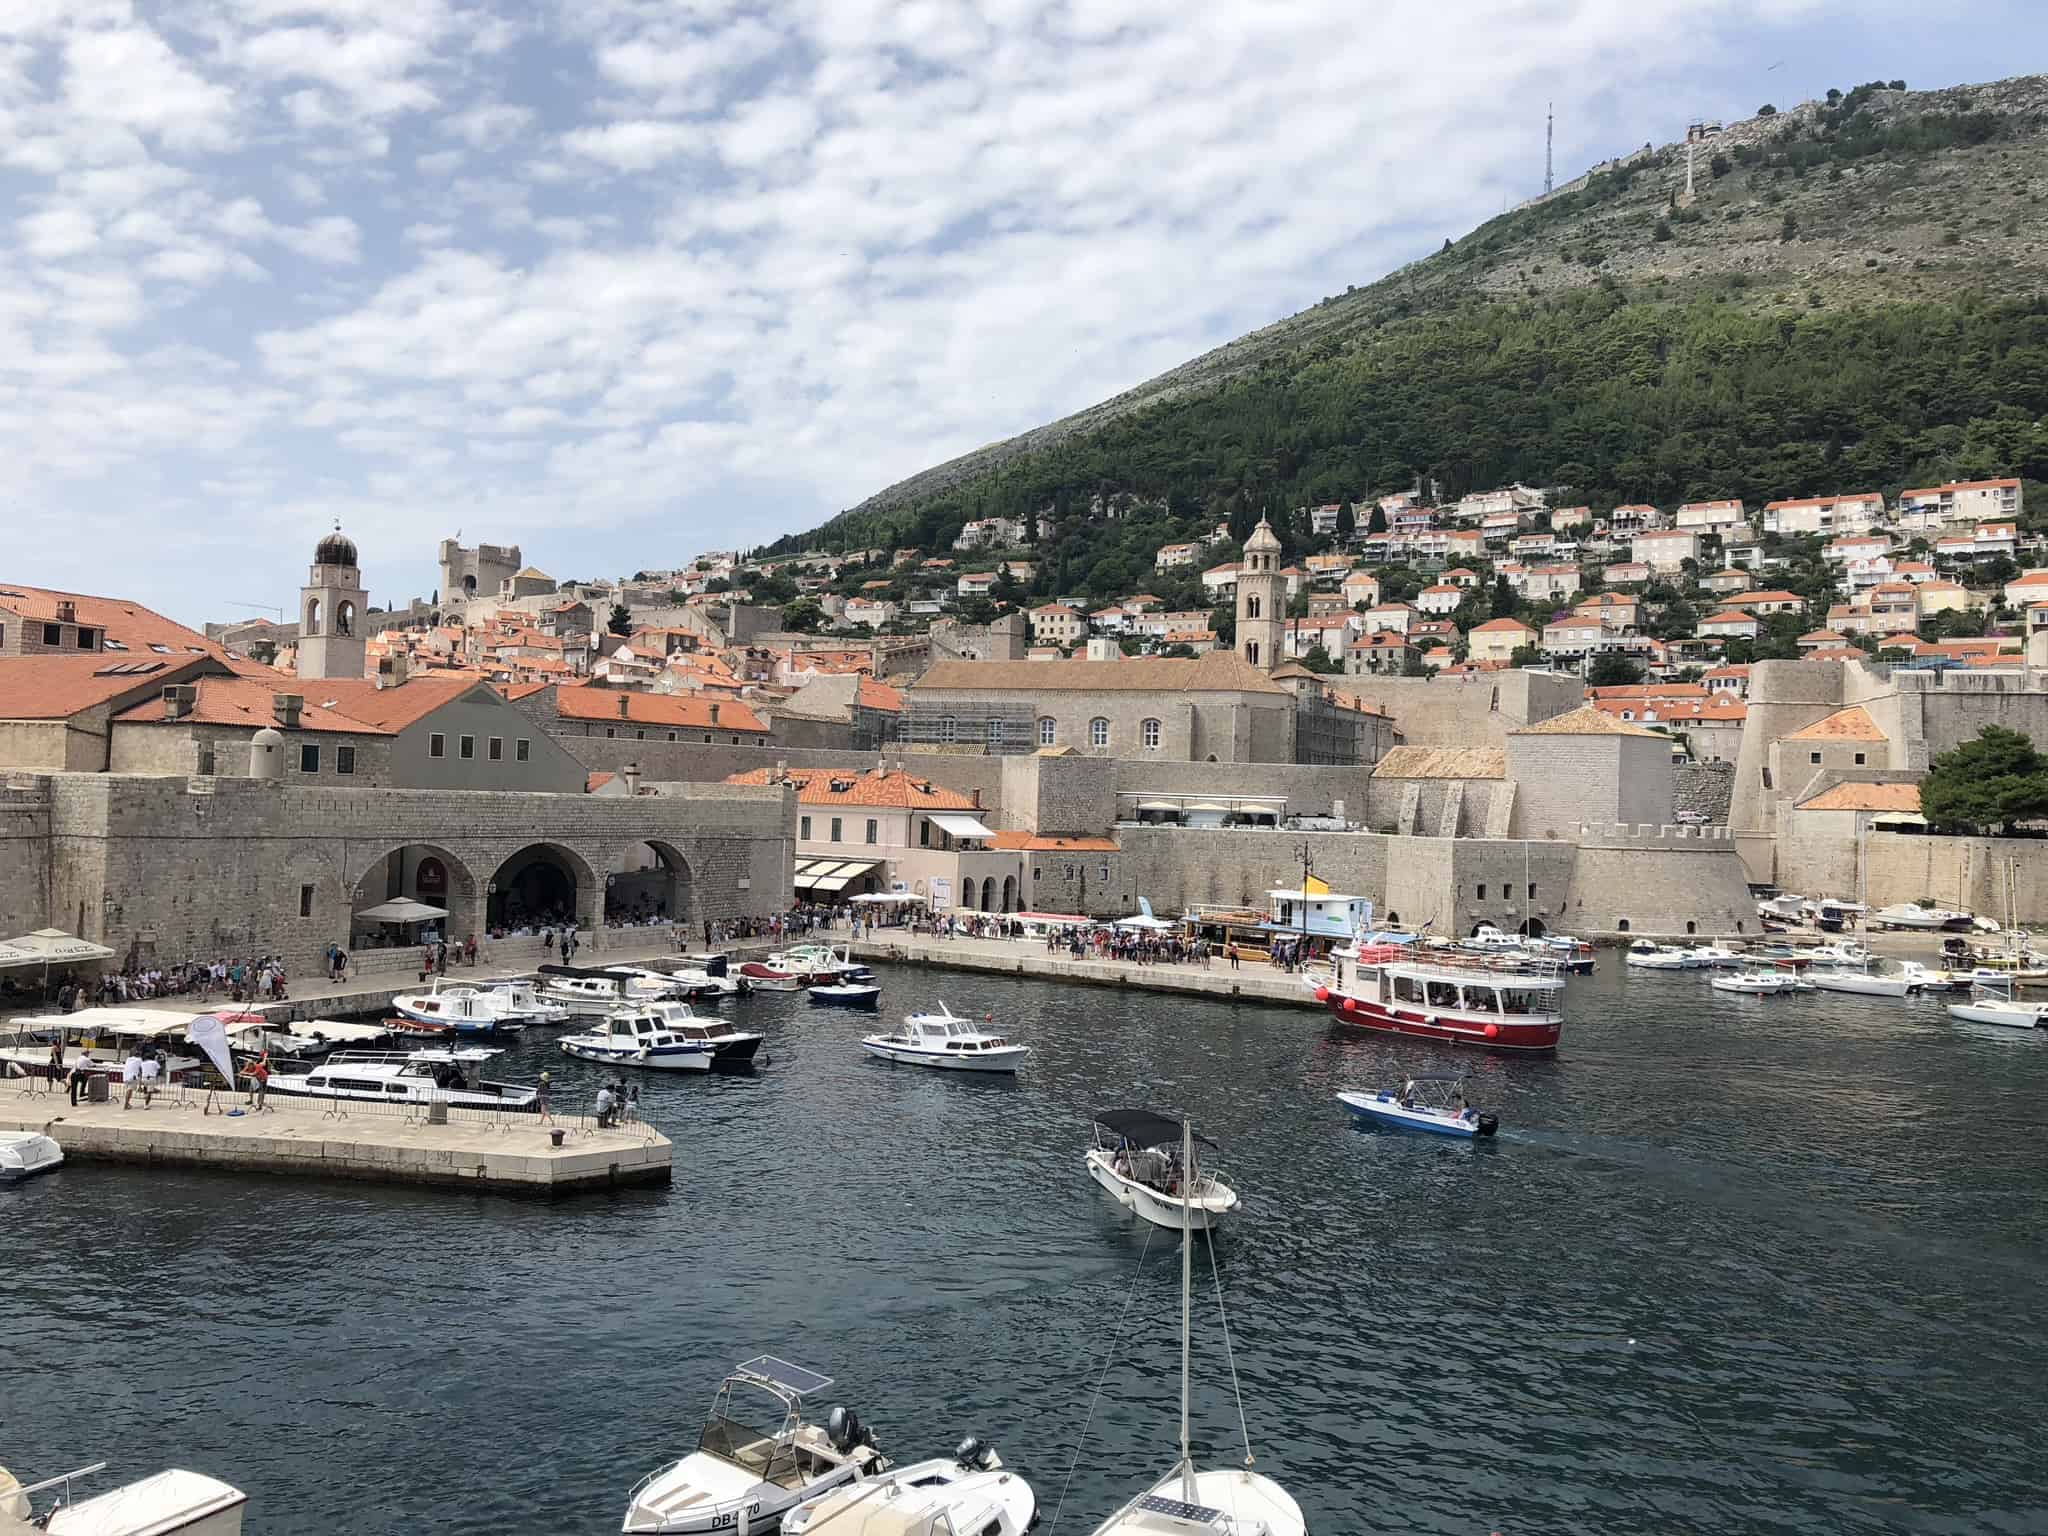 Dubrovnik - Old town harbor